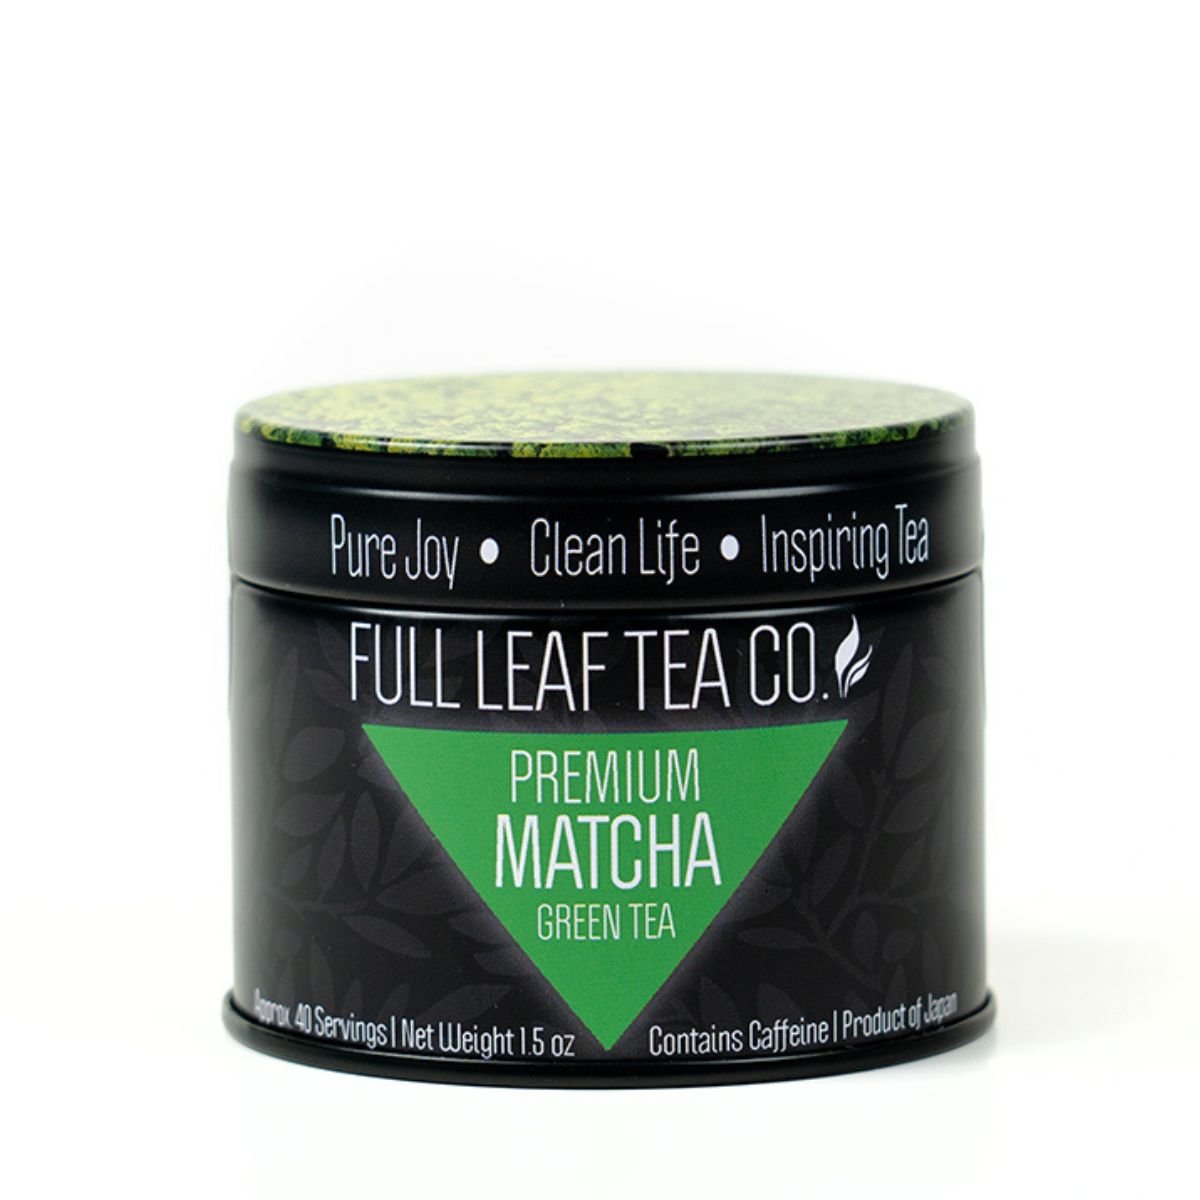 Premium Matcha - Matcha - Full Leaf Tea Company